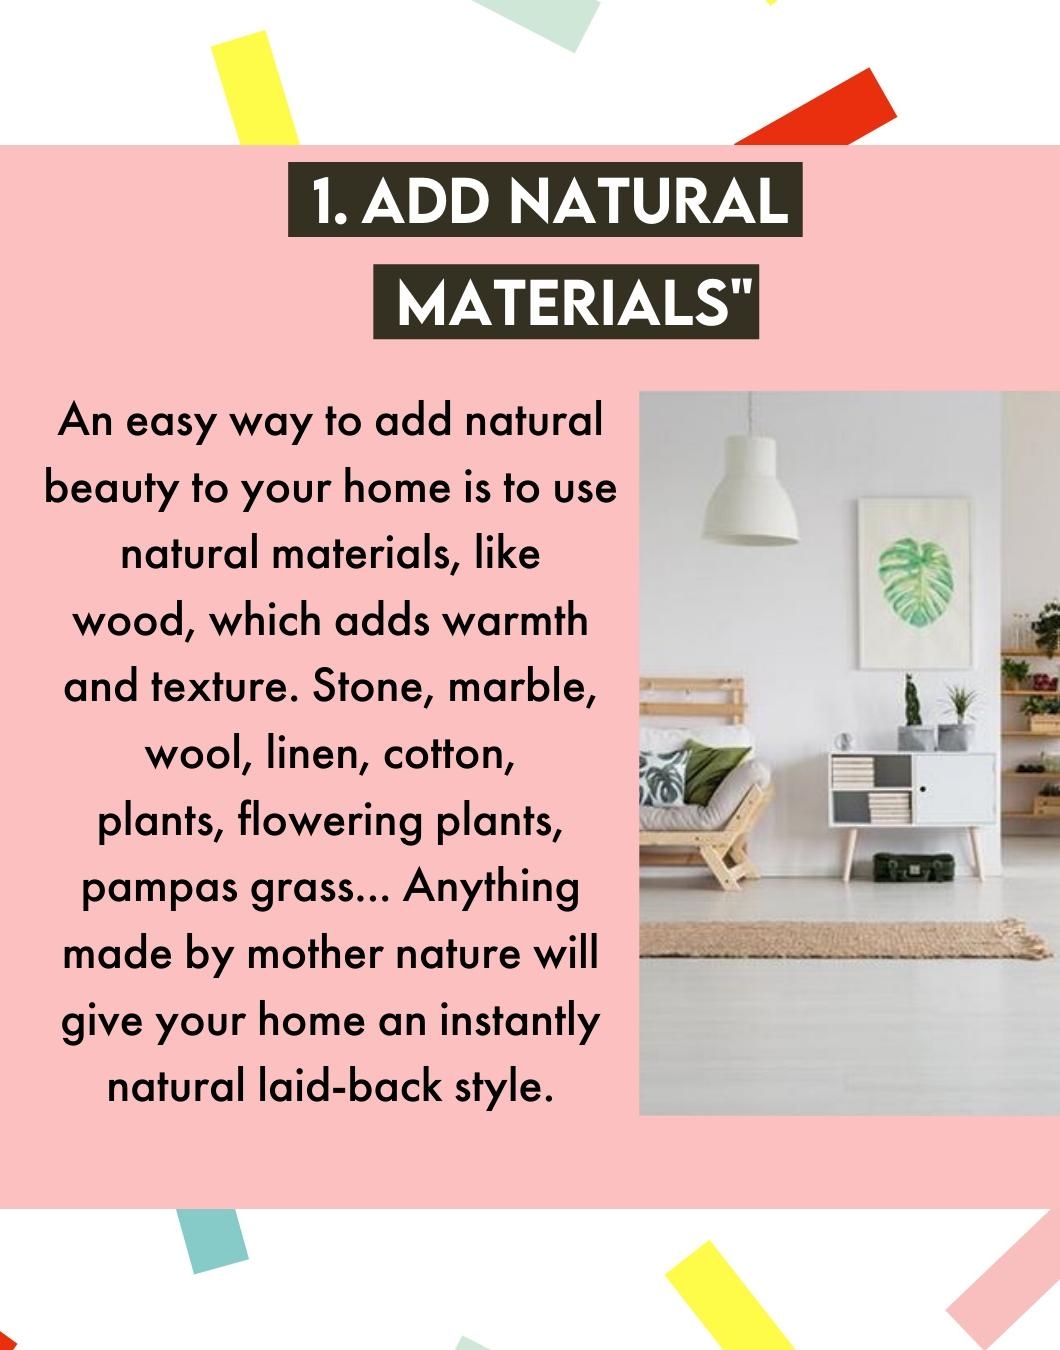 Natural Style Tipps" für euer Zuhause 😍 #designfest #couchmagazin #interior #natural #tips #naturaltips #naturdecor 